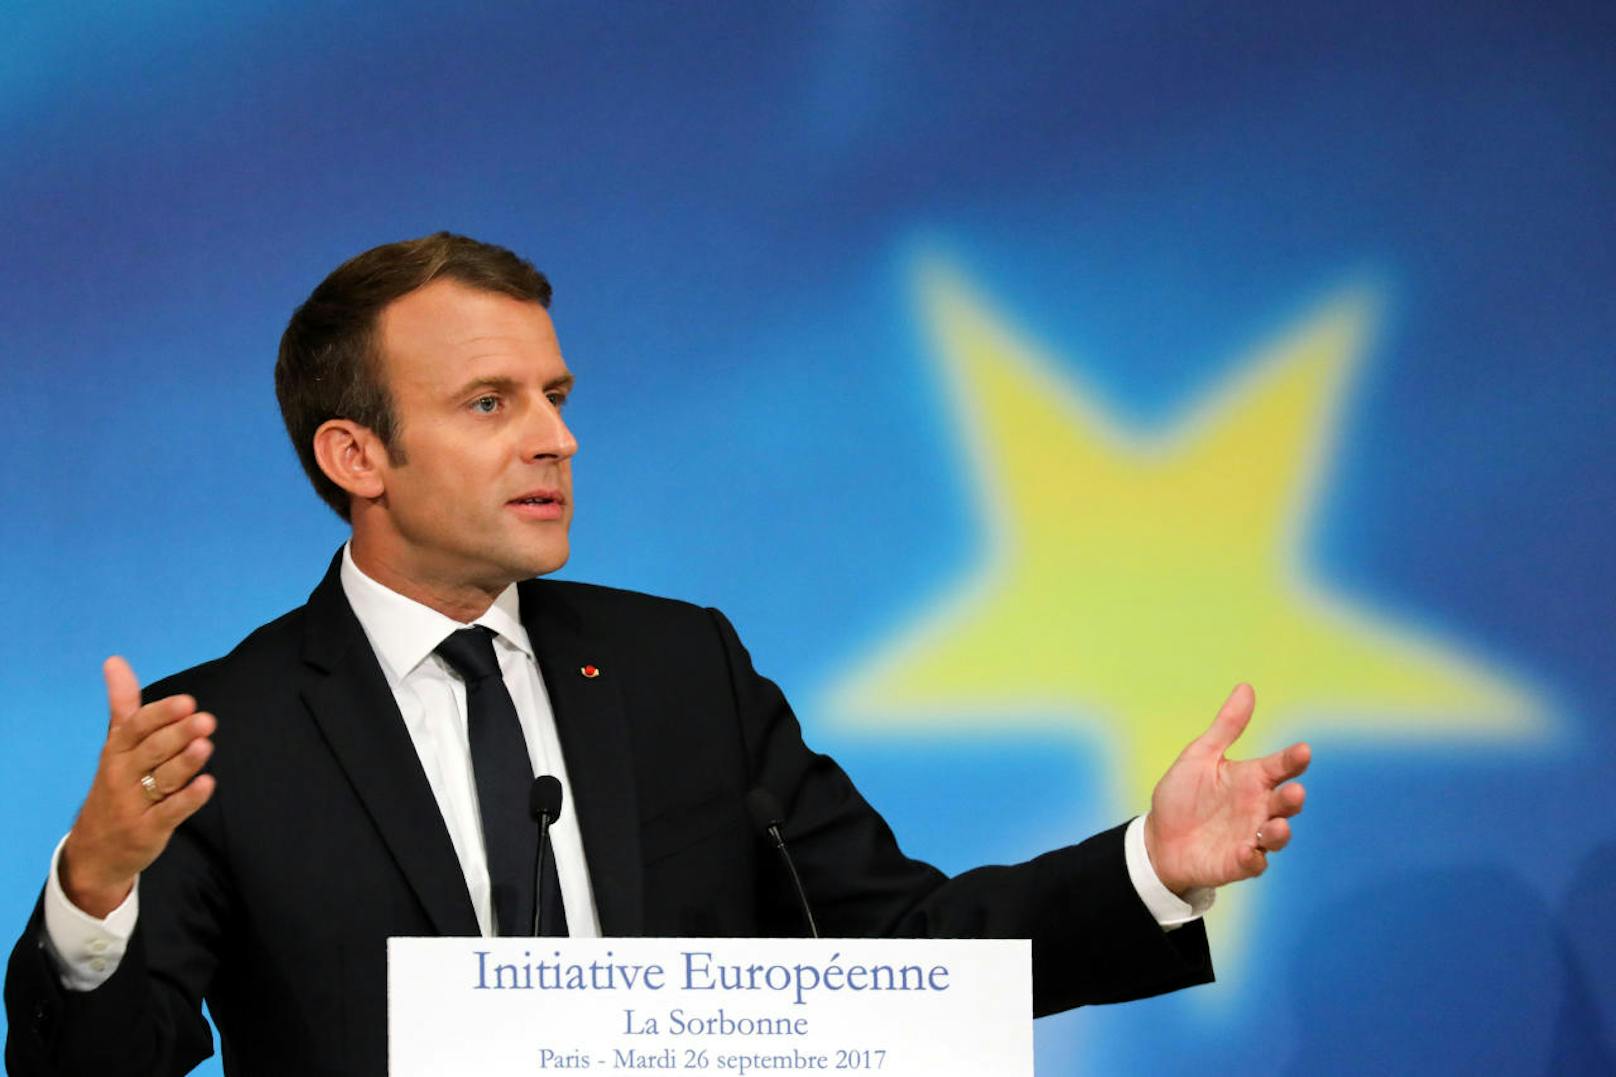 Bei seiner Grundsatzrede zur Europäischen Union forderte der französische Präsident Emmanuel Macron unter anderem auch eine gemeinsame "europäische Asylbehörde" (26. September).